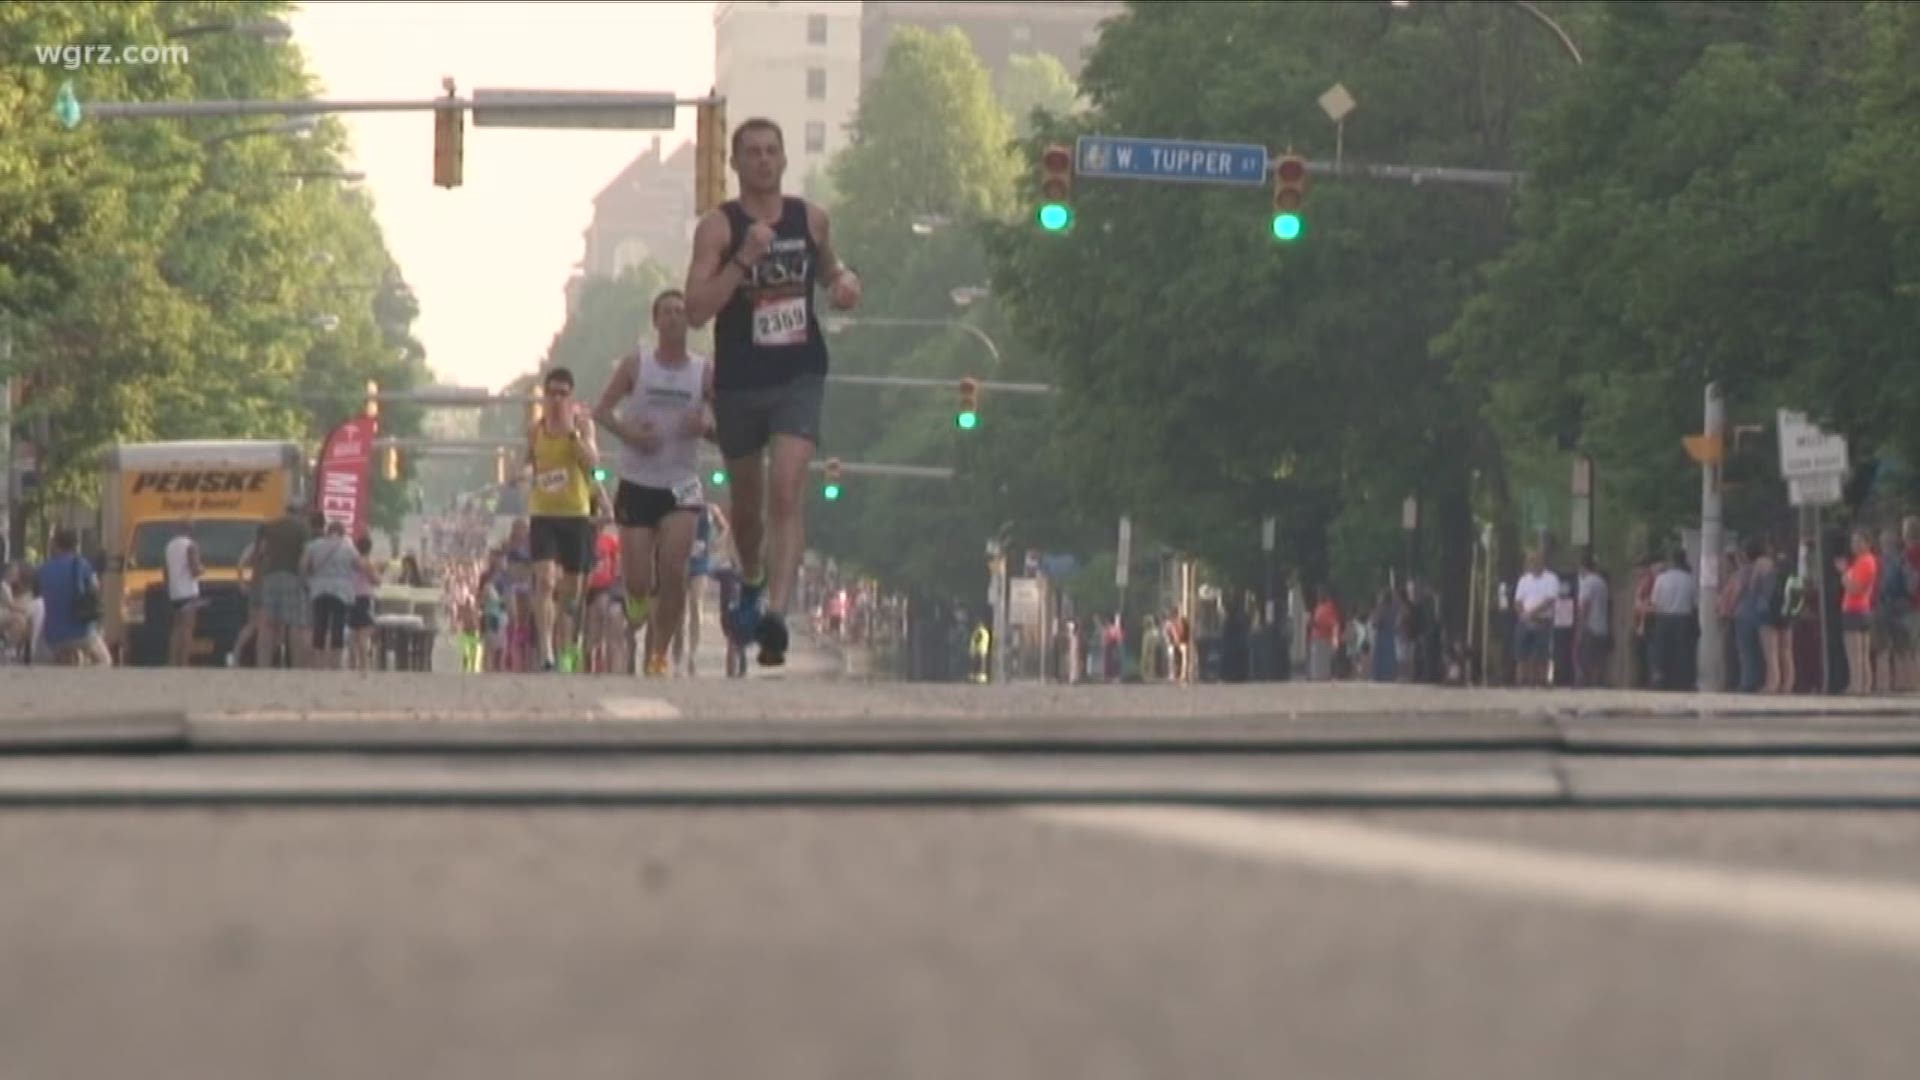 Buffalo Marathon begins 6:30 Saturday morning